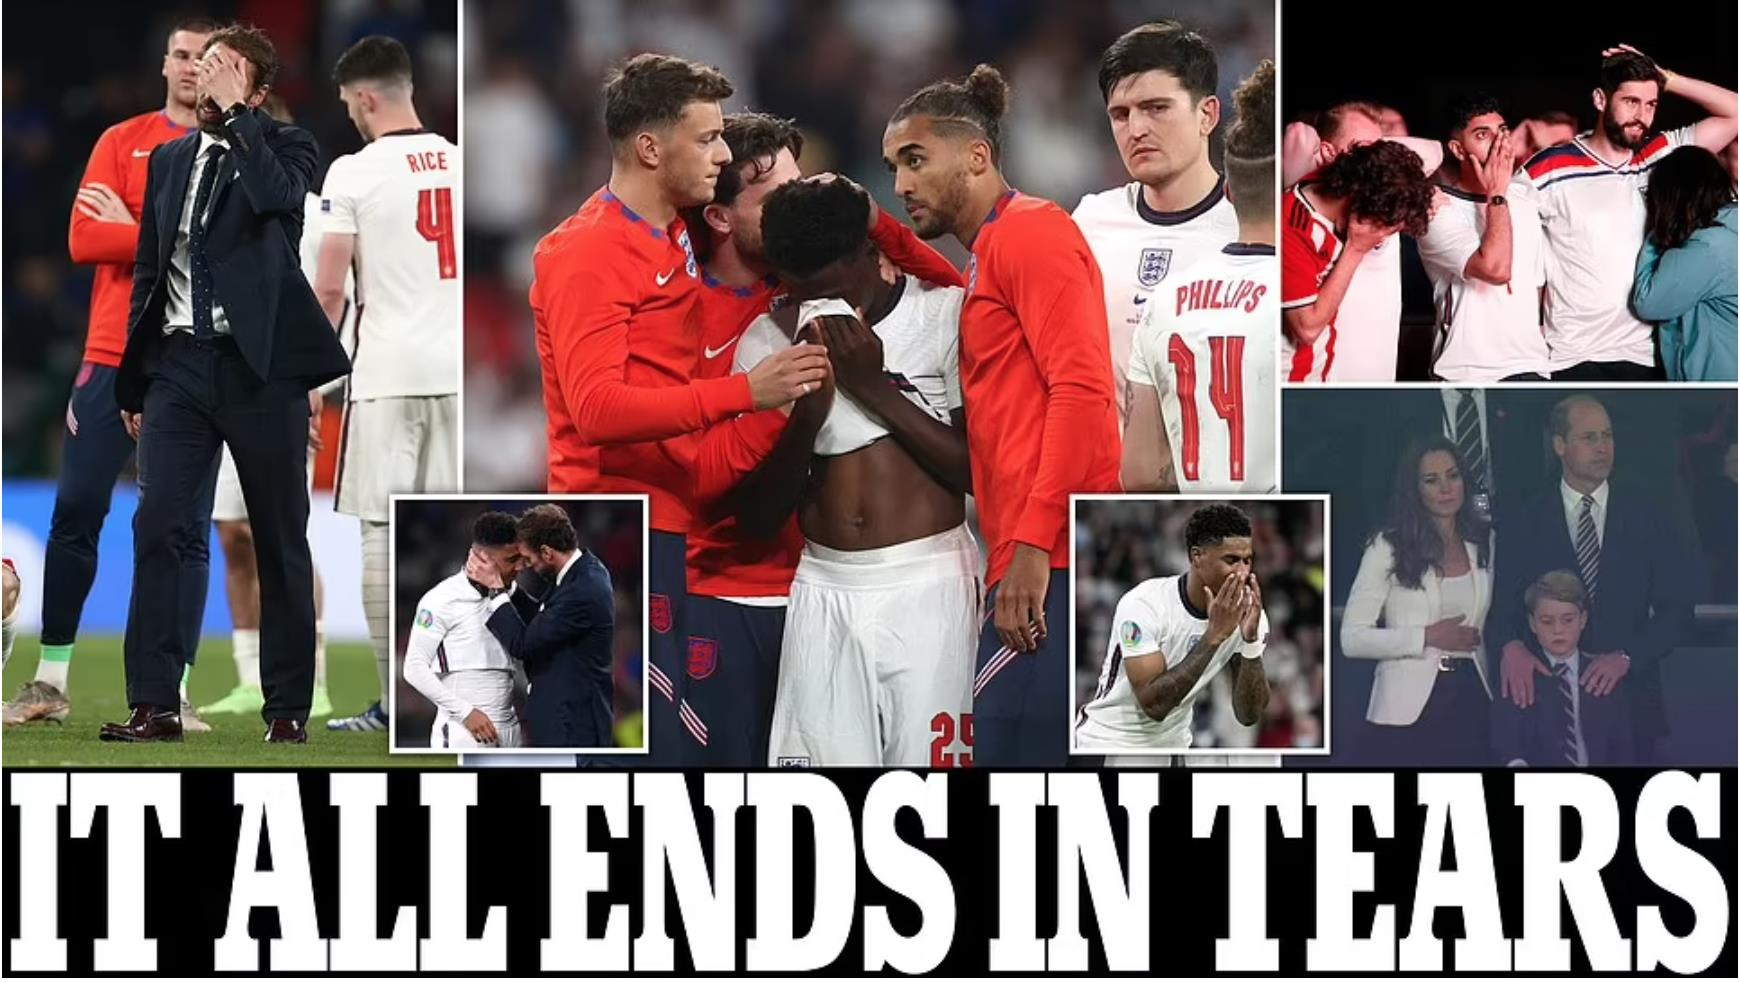 Tan mộng vô địch EURO, báo chí Anh cay đắng: Tất cả kết thúc trong nước mắt - 1